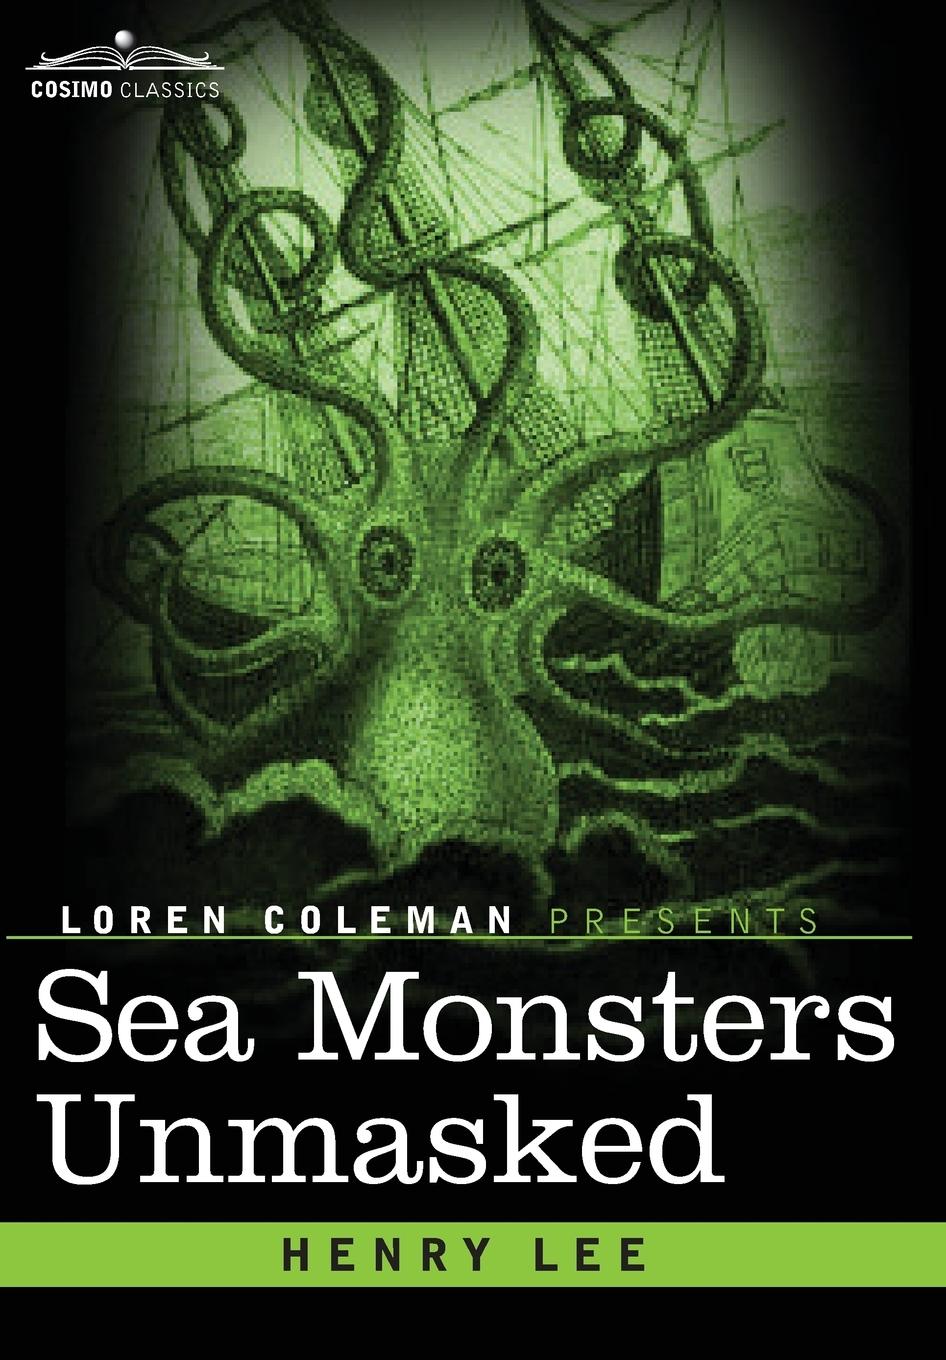 Sea Monsters Unmasked - Lee, Henry